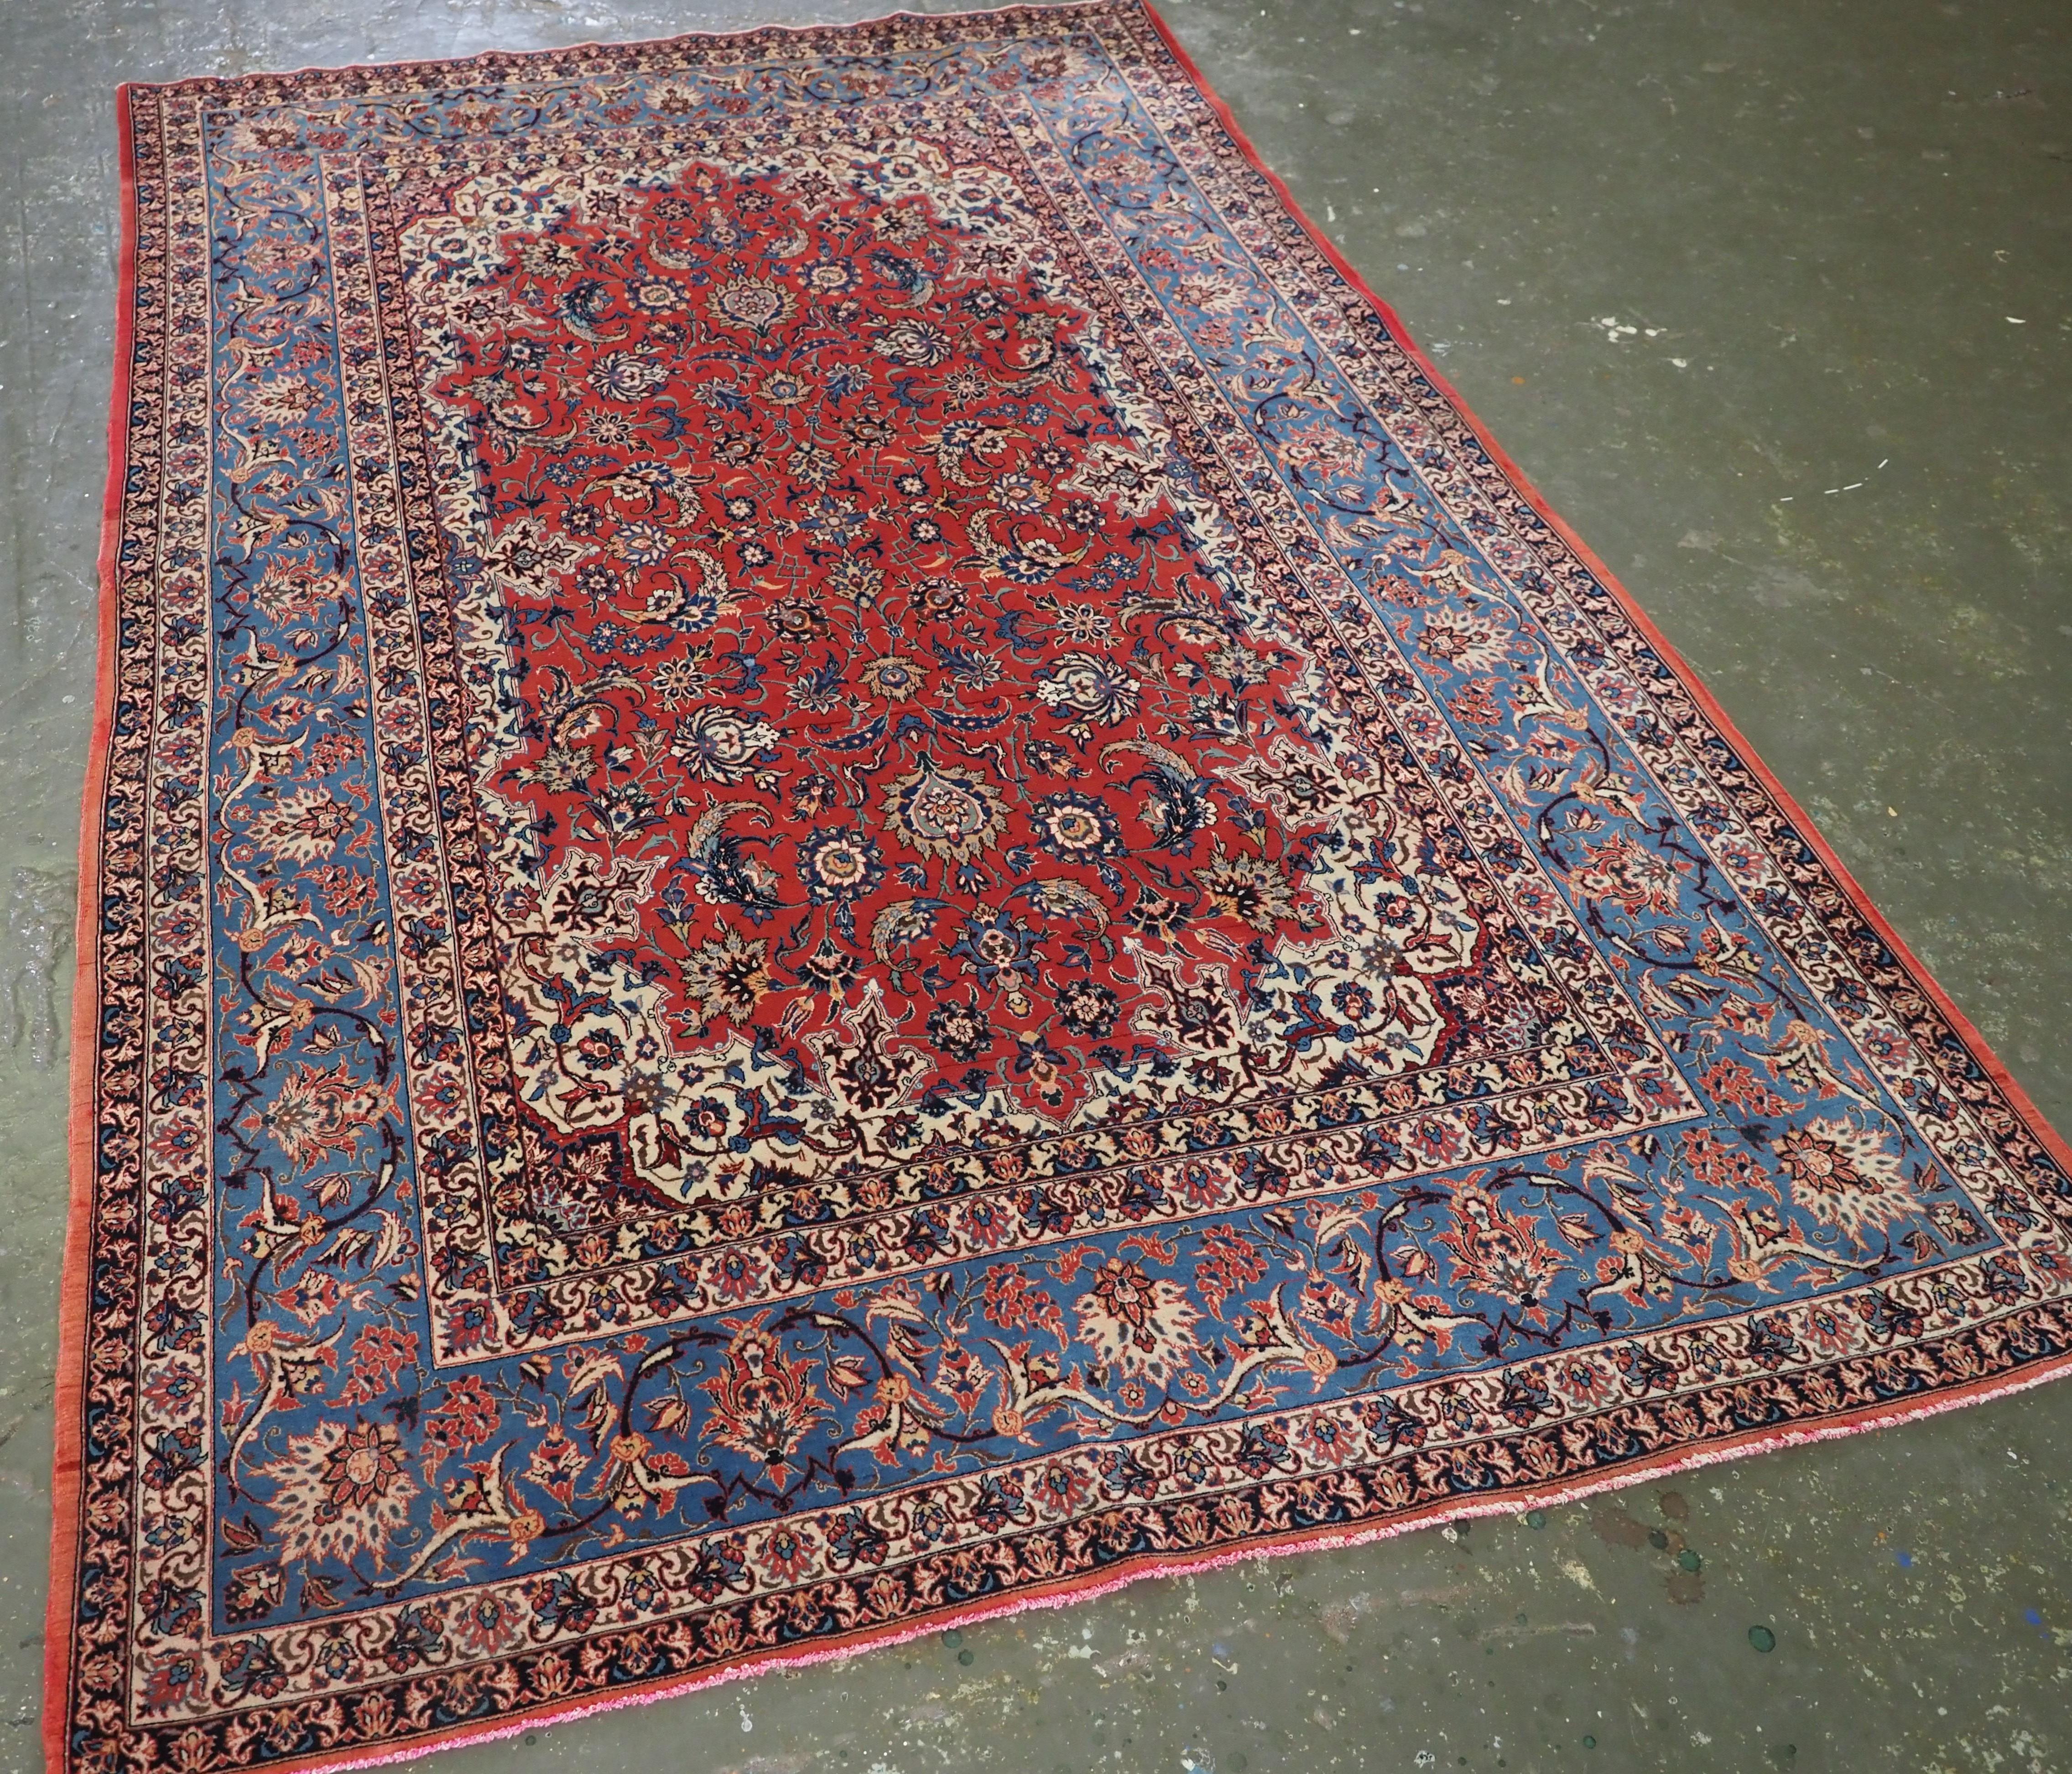 
Größe: 7ft 6in x 4ft 10in (228 x 147cm).

Antiker Isfahan-Teppich mit Allover-Muster auf einem warmen, roten Grund aus Lammwolle.

Ca. 1920.

Der Teppich ist von einer sehr feinen Webart auf einem Seidenfundament, der Teppich hat ein florales